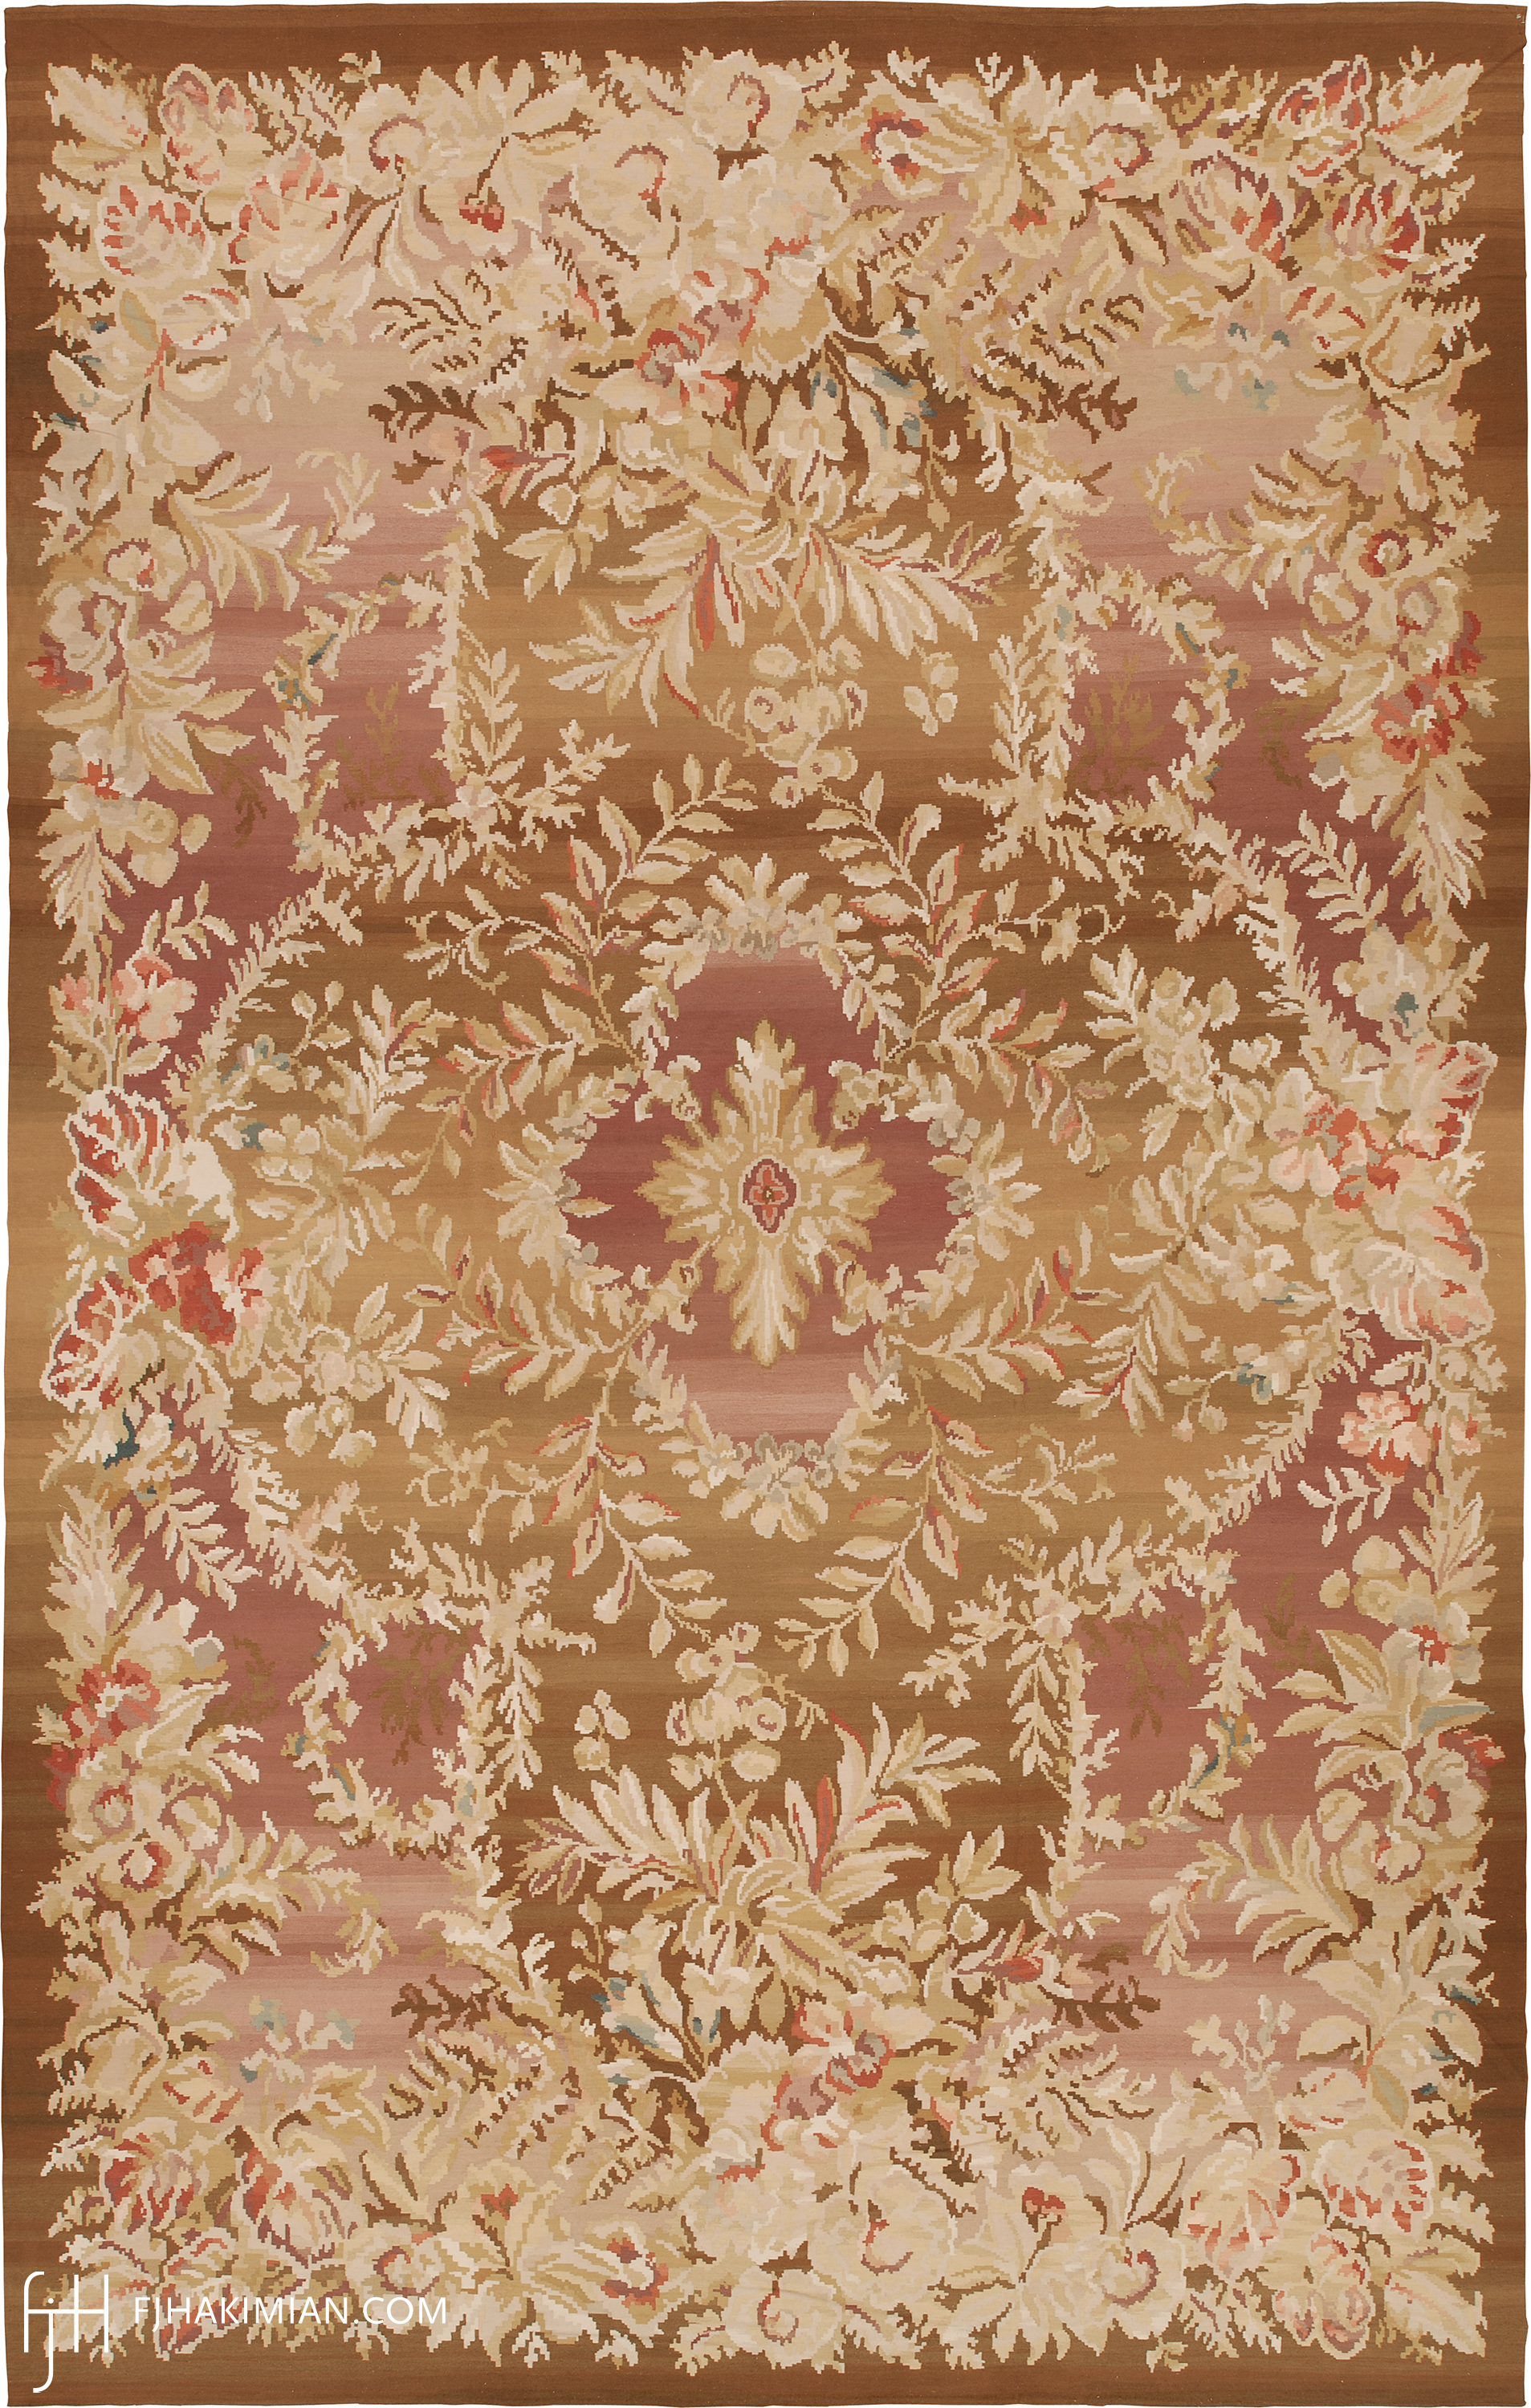 Custom Fall Design | FJ Hakimian | Carpet Gallery in NY